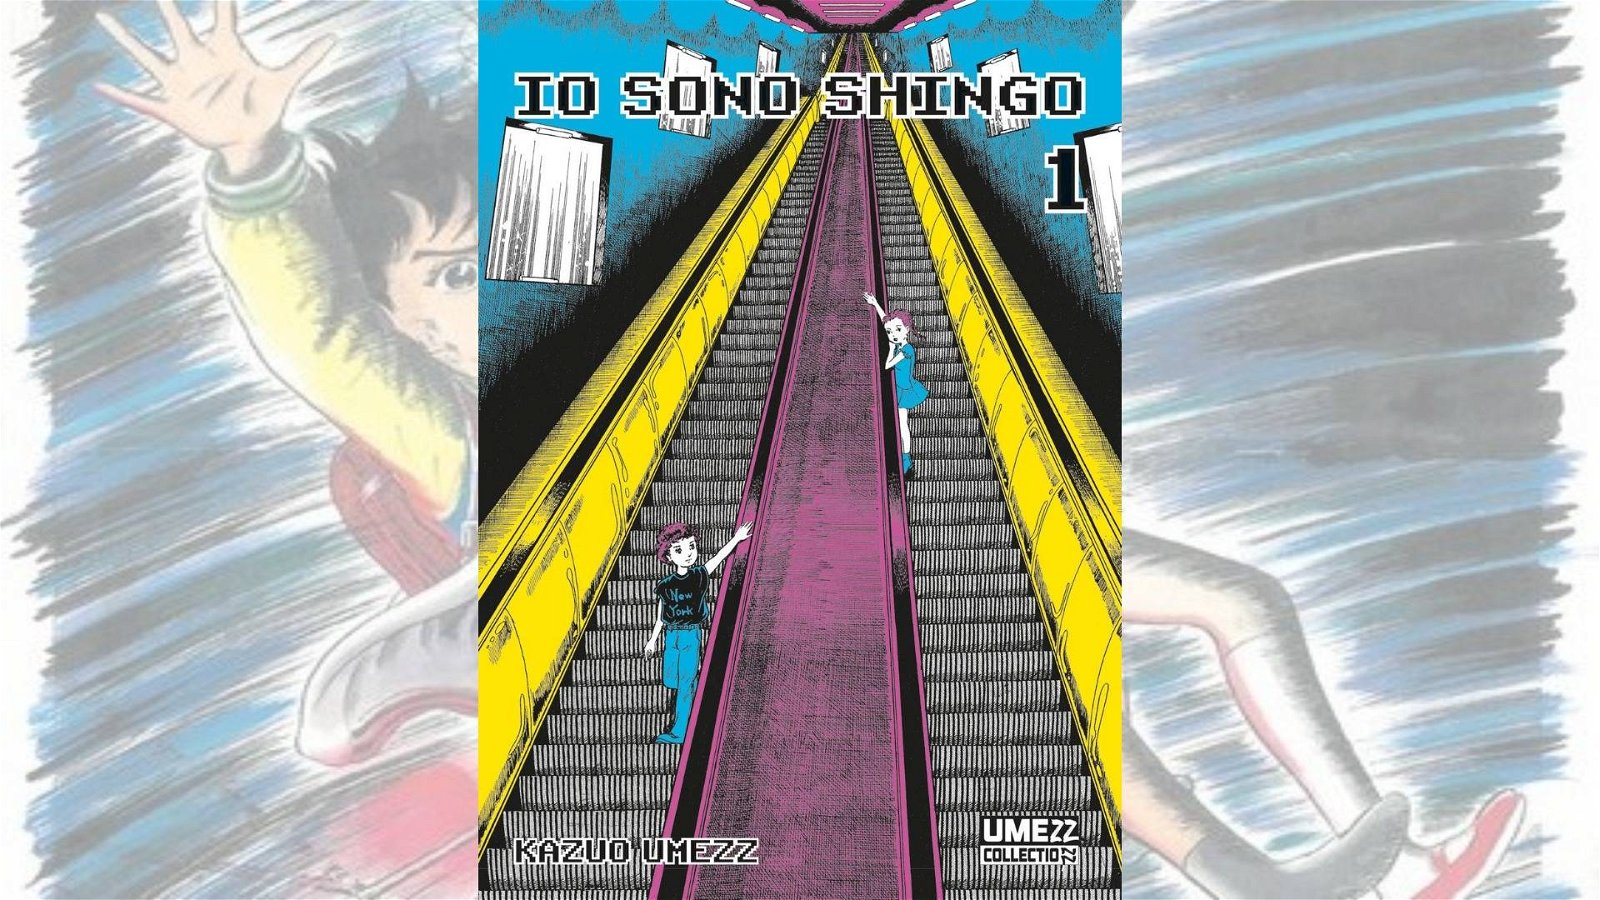 Immagine di Io sono Shingo, la recensione del primo volume!